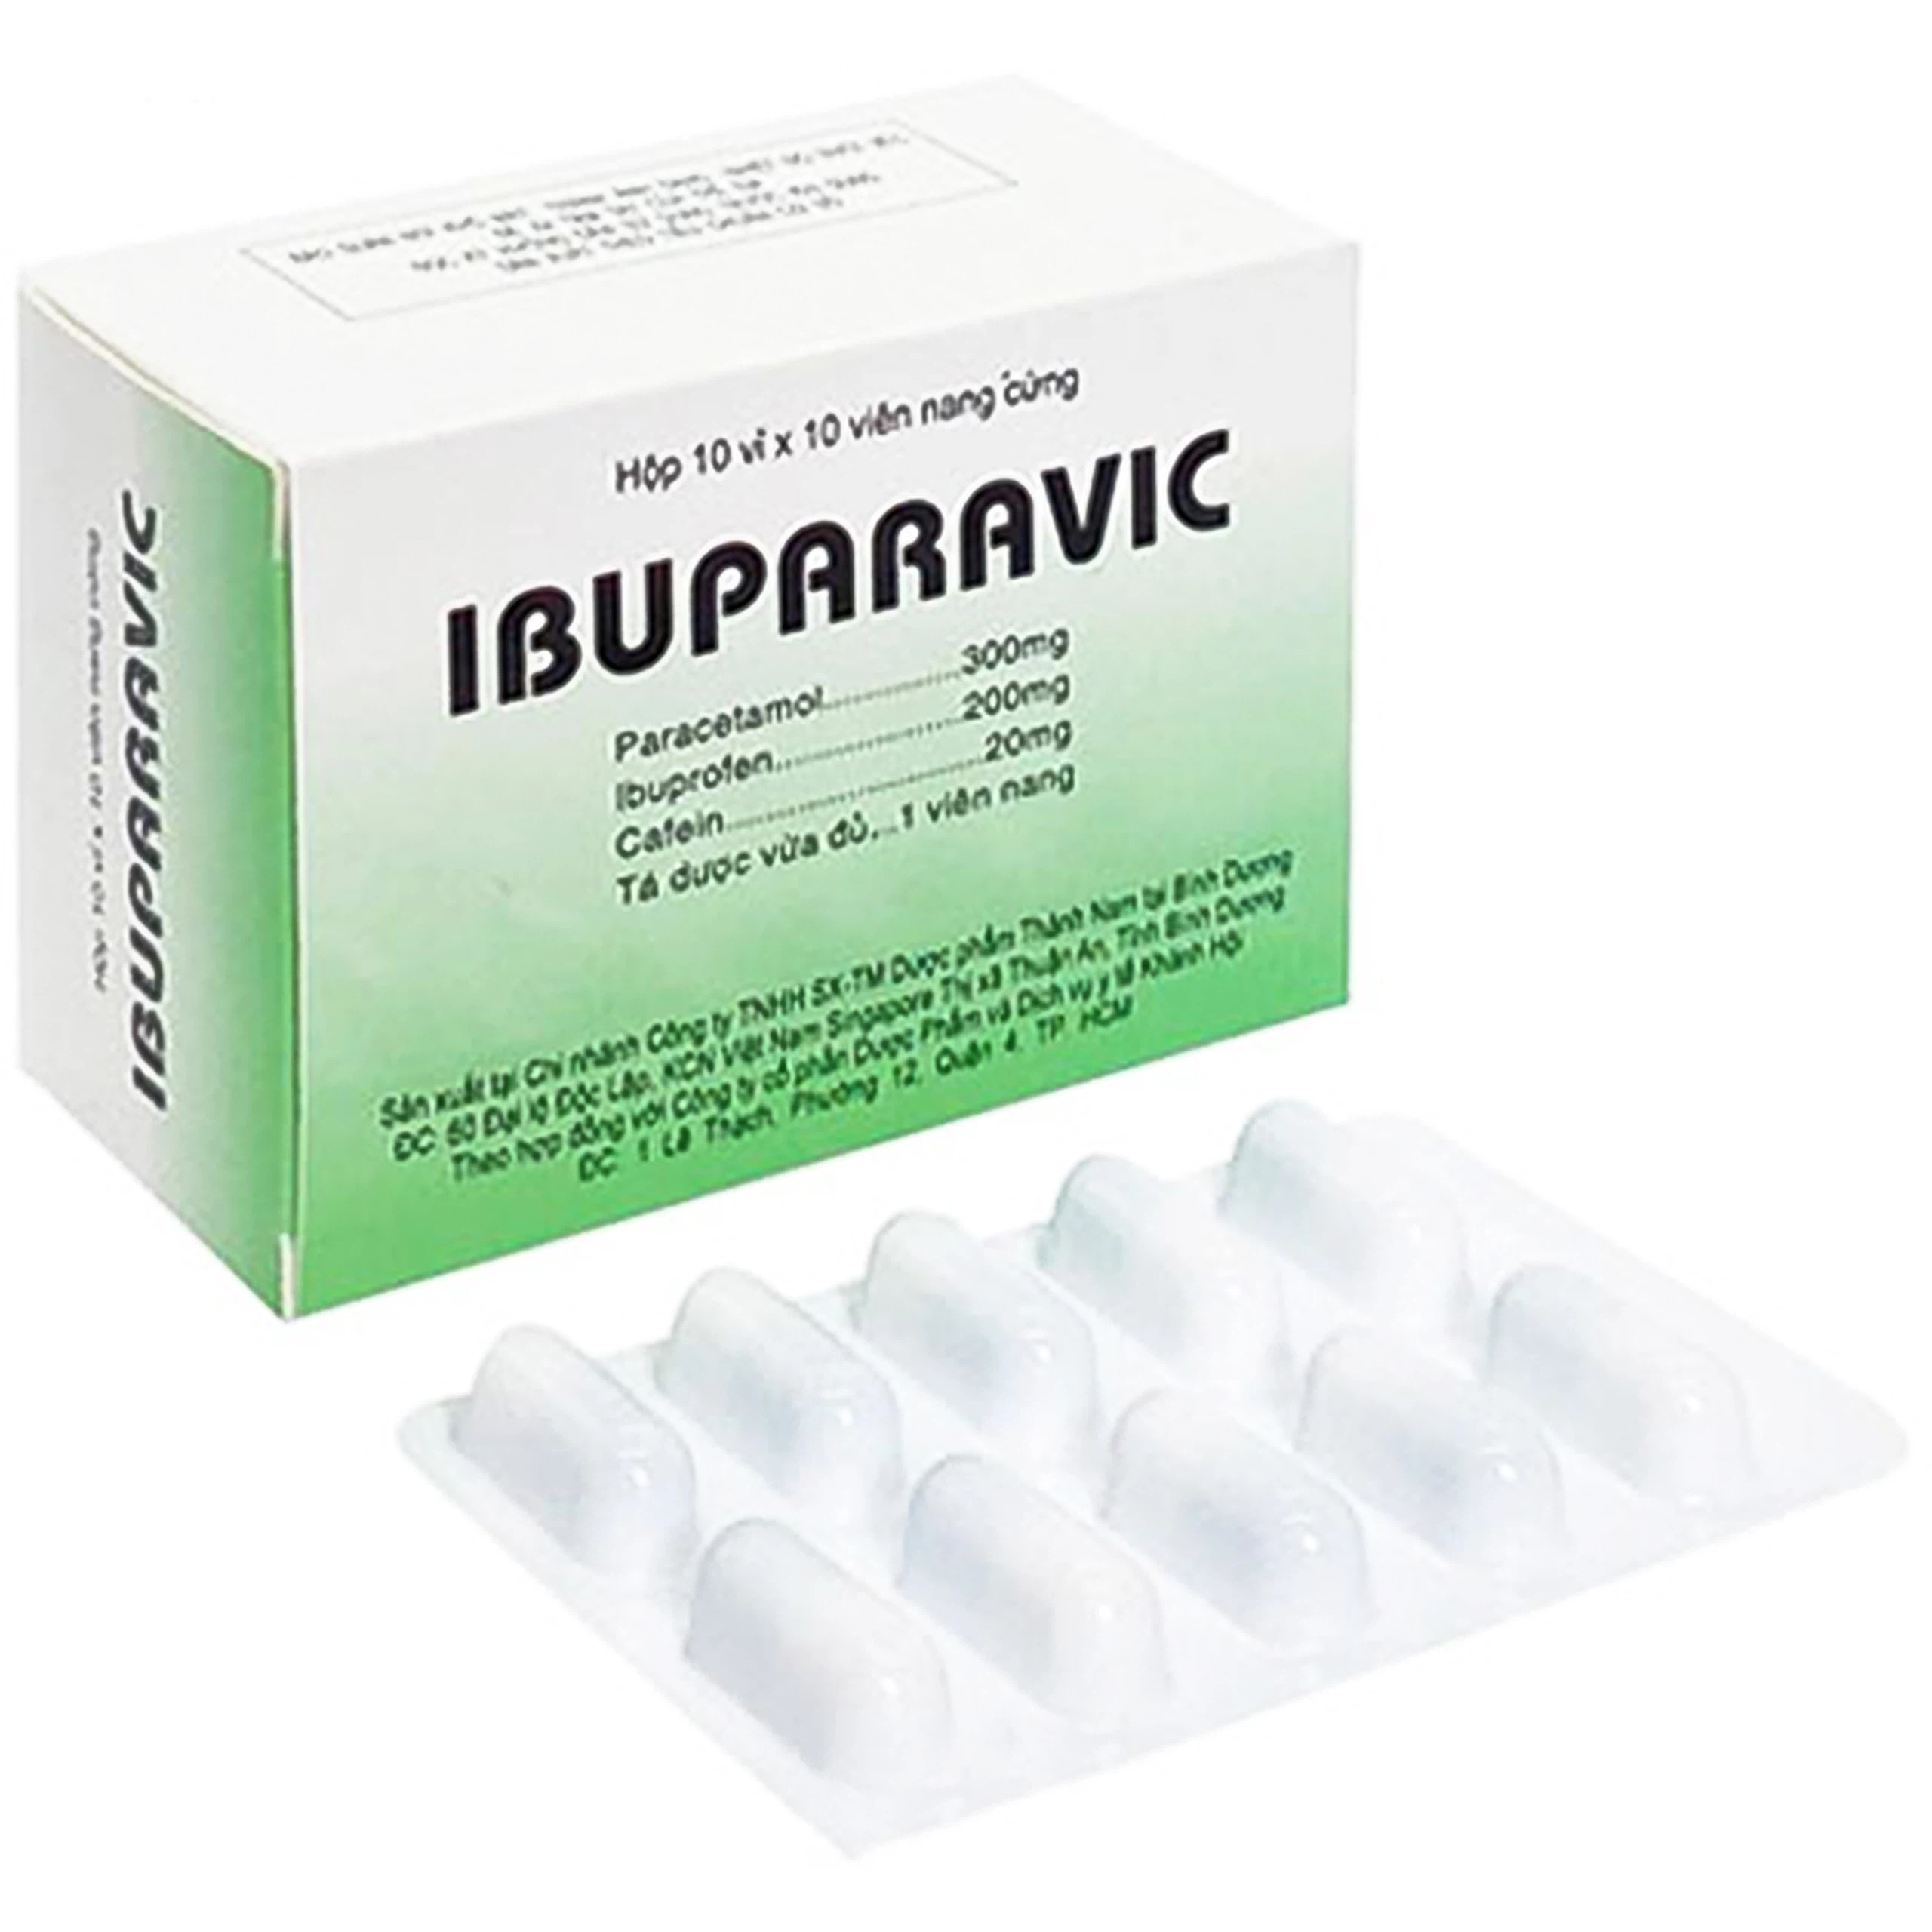 Thuốc Ibuparavic Thành Nam giảm nhức đầu, đau răng, đau họng, đau lưng, đau cơ (10 vỉ x 10 viên)